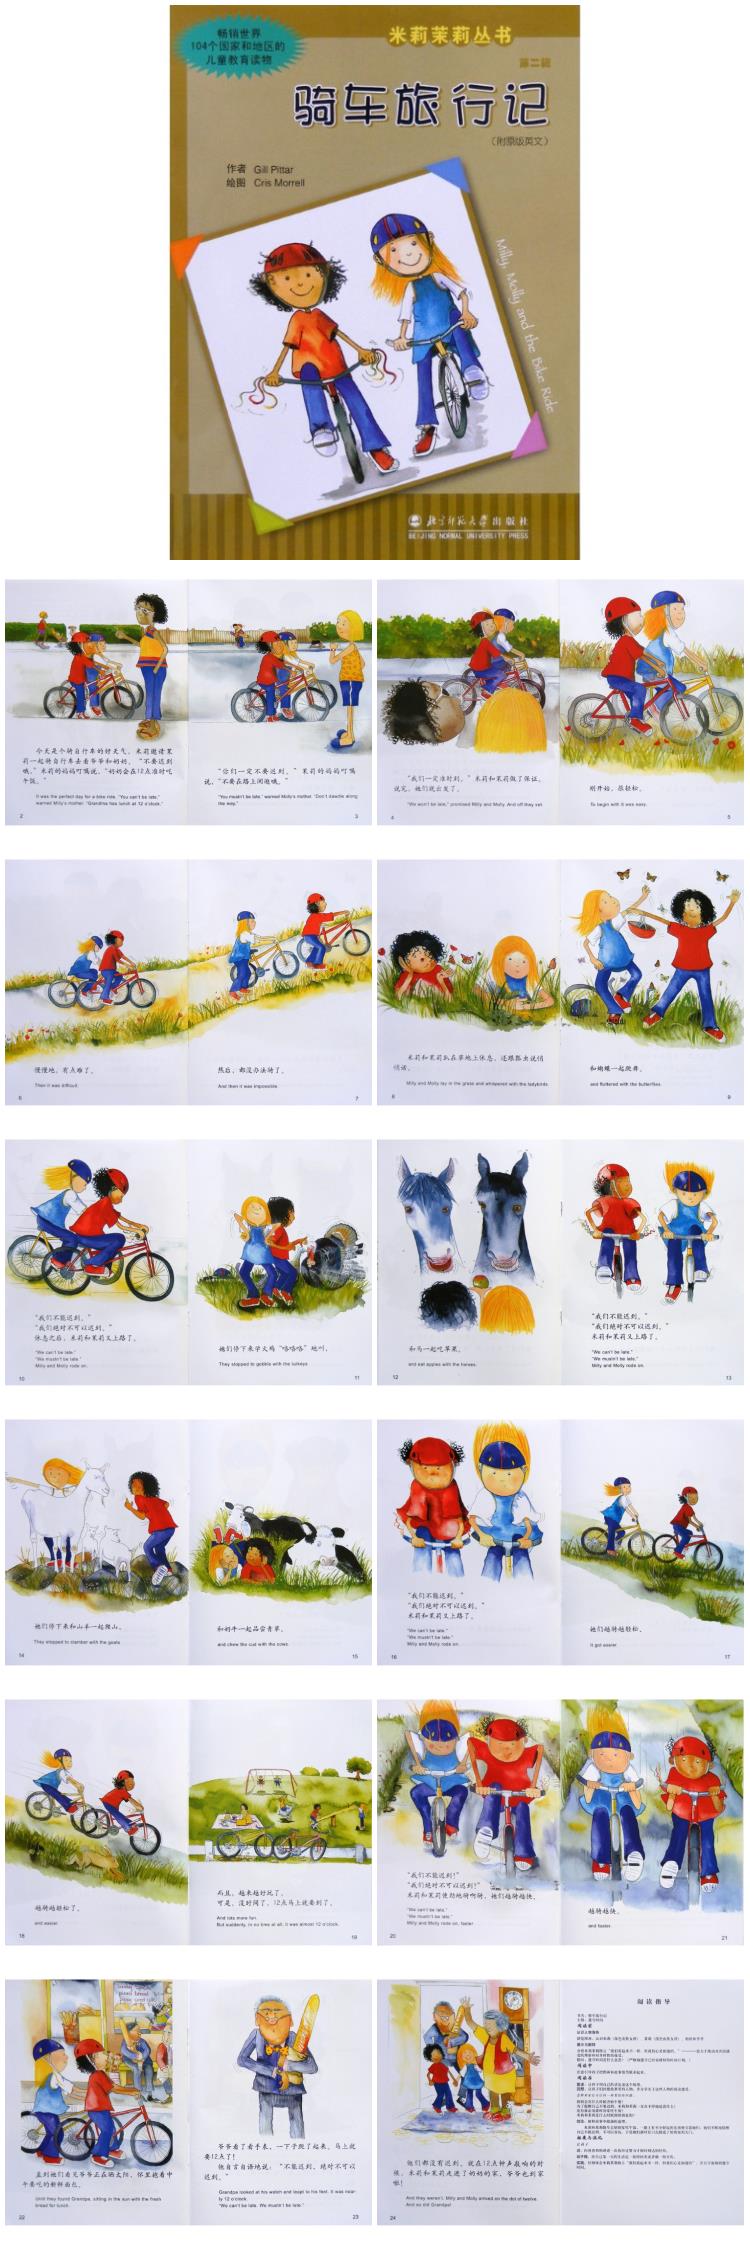 《骑车旅行记》童话绘本儿童故事PPT